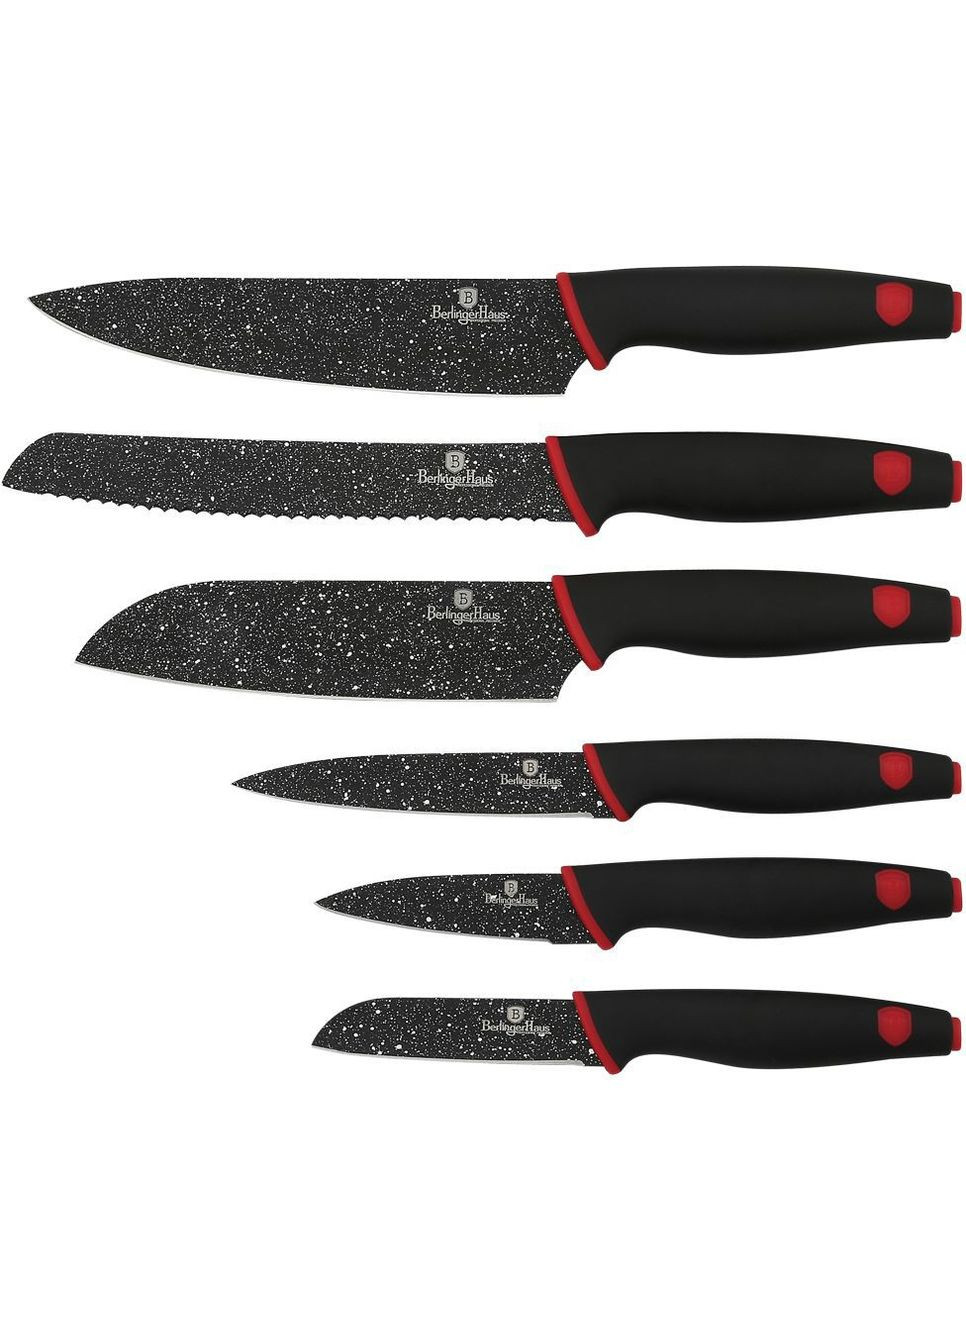 Набір ножів 6 предметів Stone Touch Line Black BH2114 Berlinger Haus комбінований,